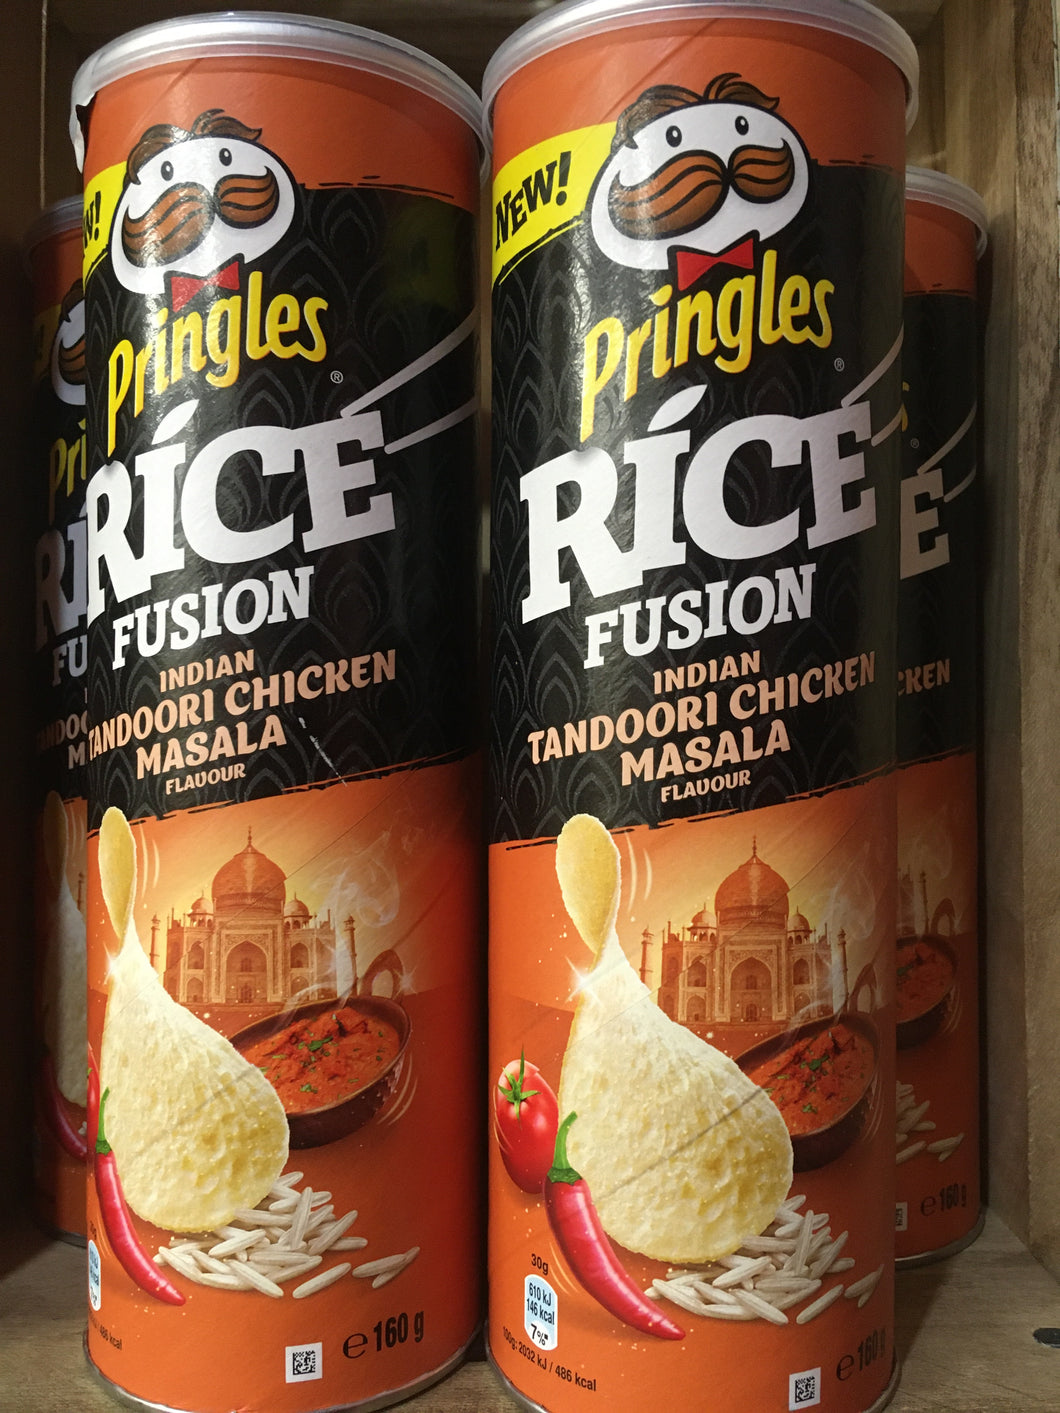 5x Pringles Rice Fusion Tandoori Chicken Masala Flavour (5x160g)